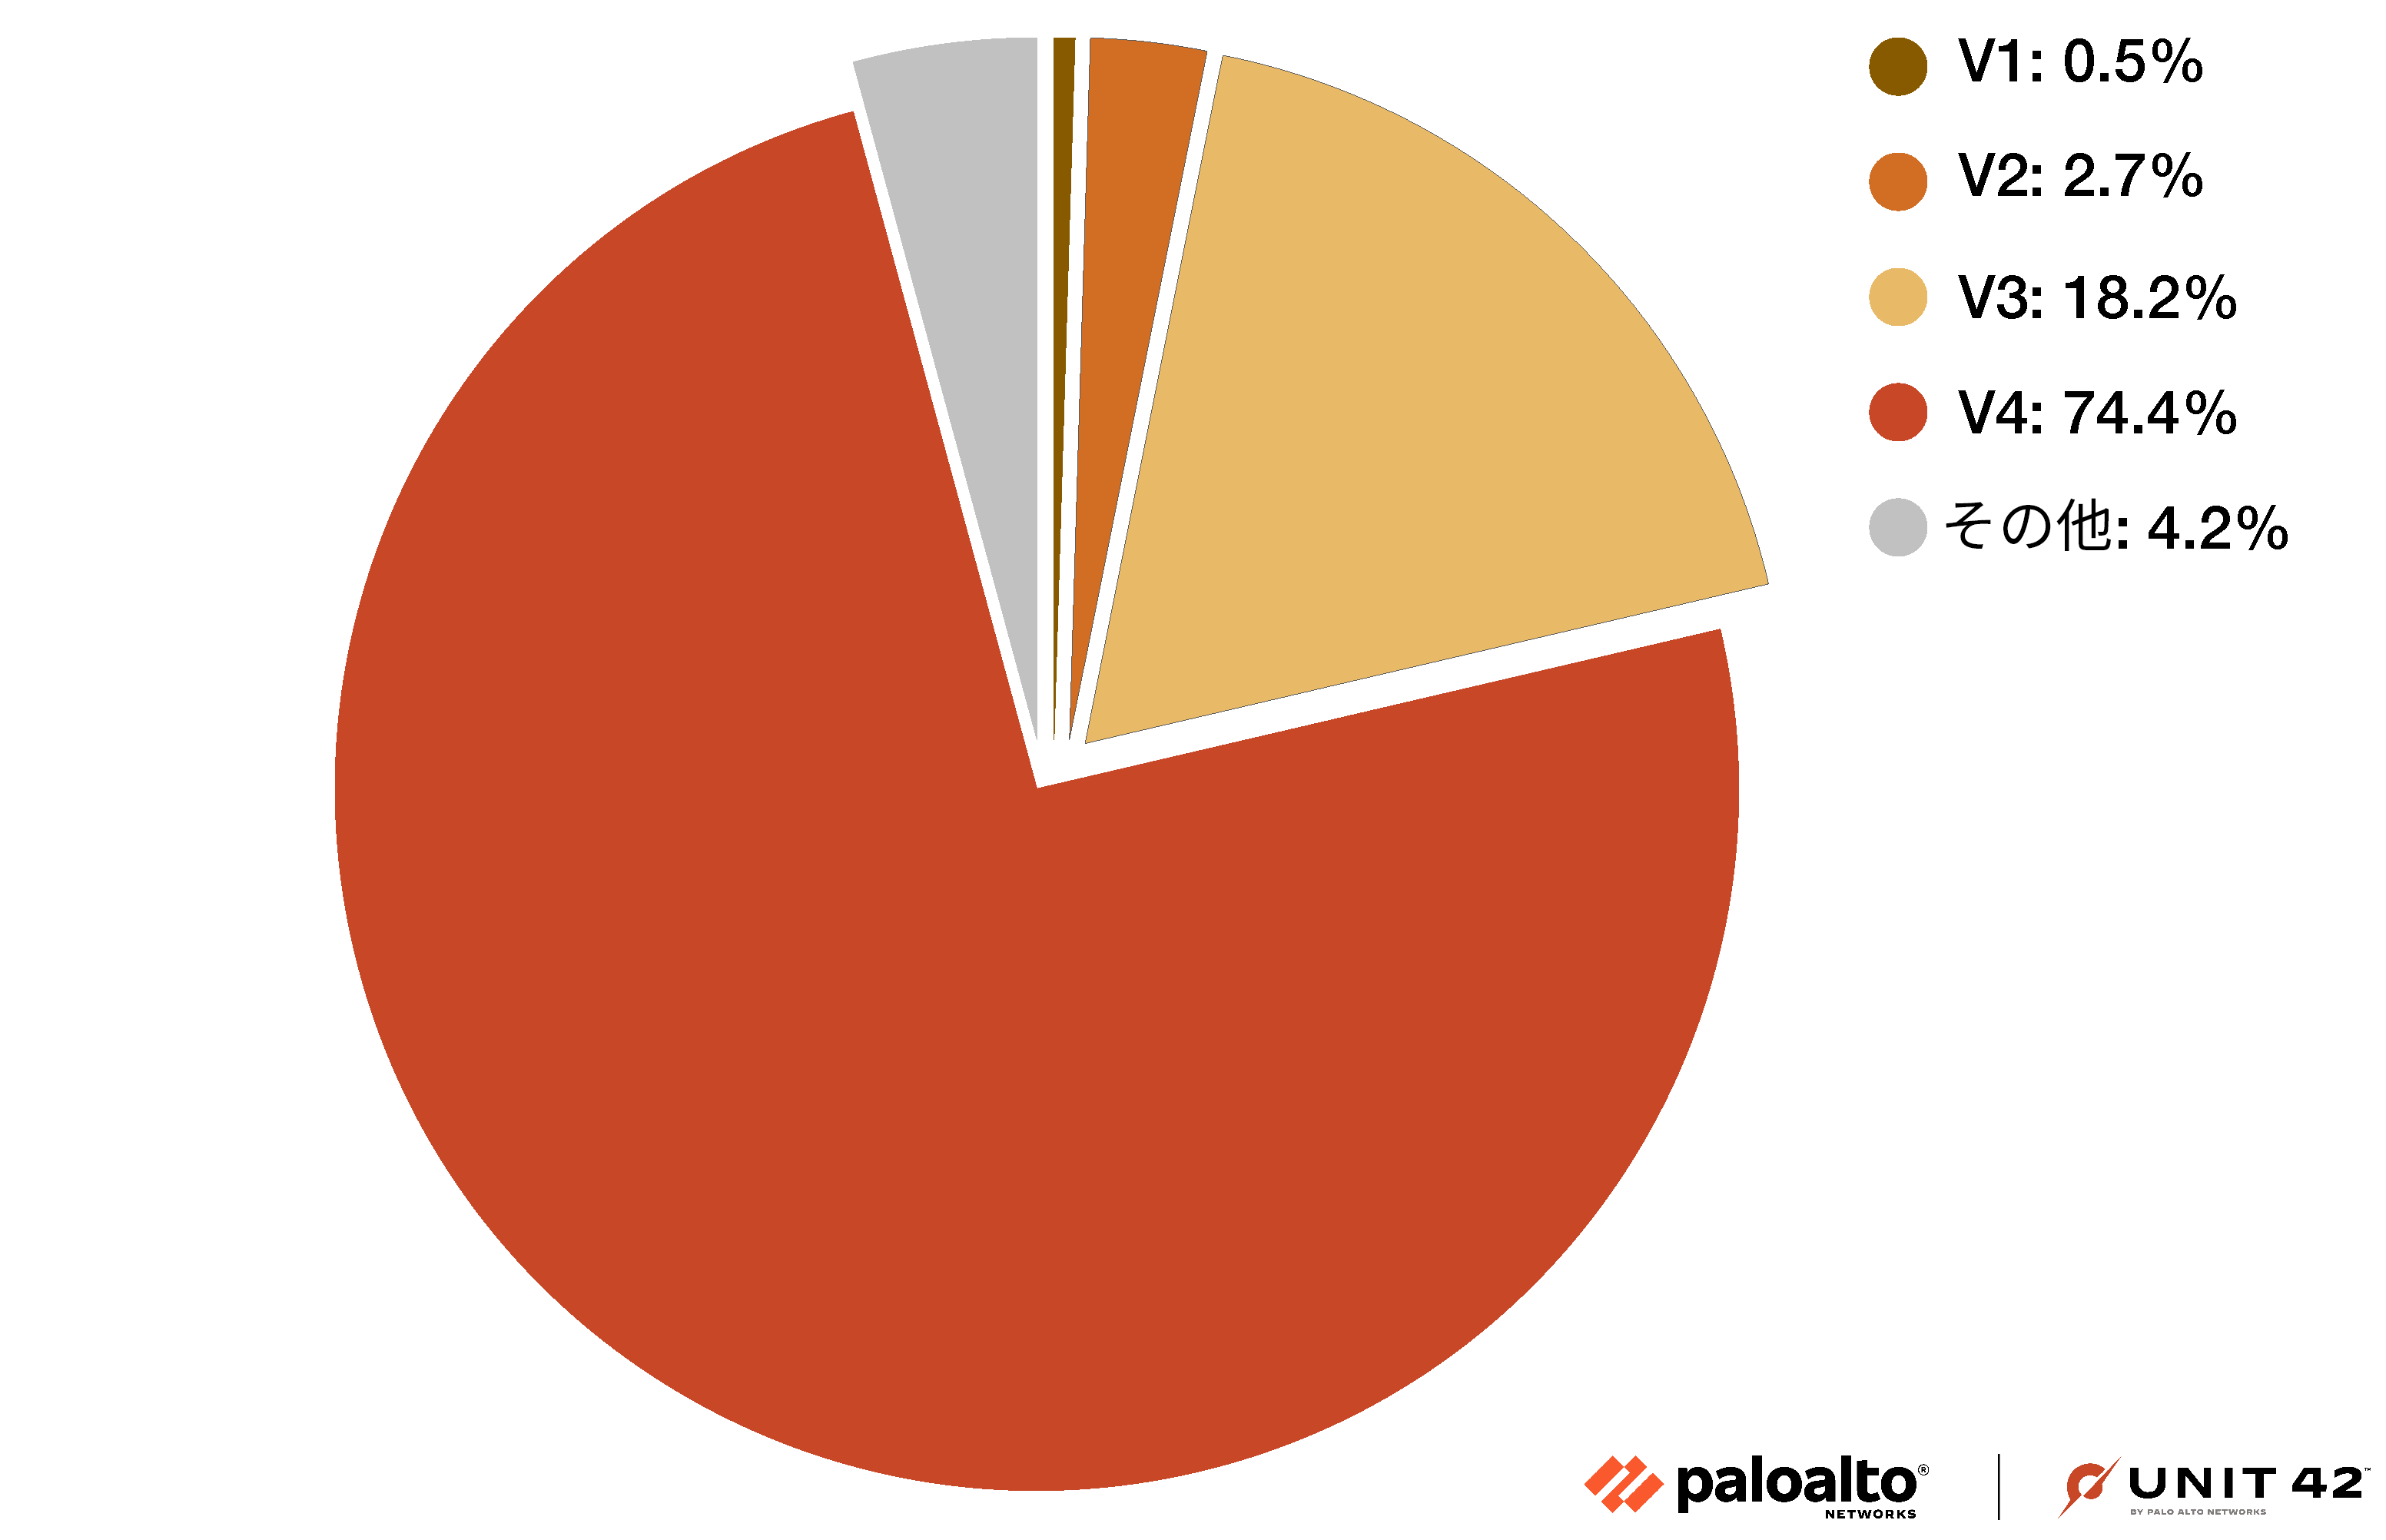 画像 2 は Parrot TDS のランディング スクリプトの分布を表す円グラフです。左から右へ時計回りに、その他が 4.2%、バージョン 1 が 0.5%、バージョン 2 が 2.7%、バージョン 3 が 18.2%、バージョン 4 が 74.4% です。